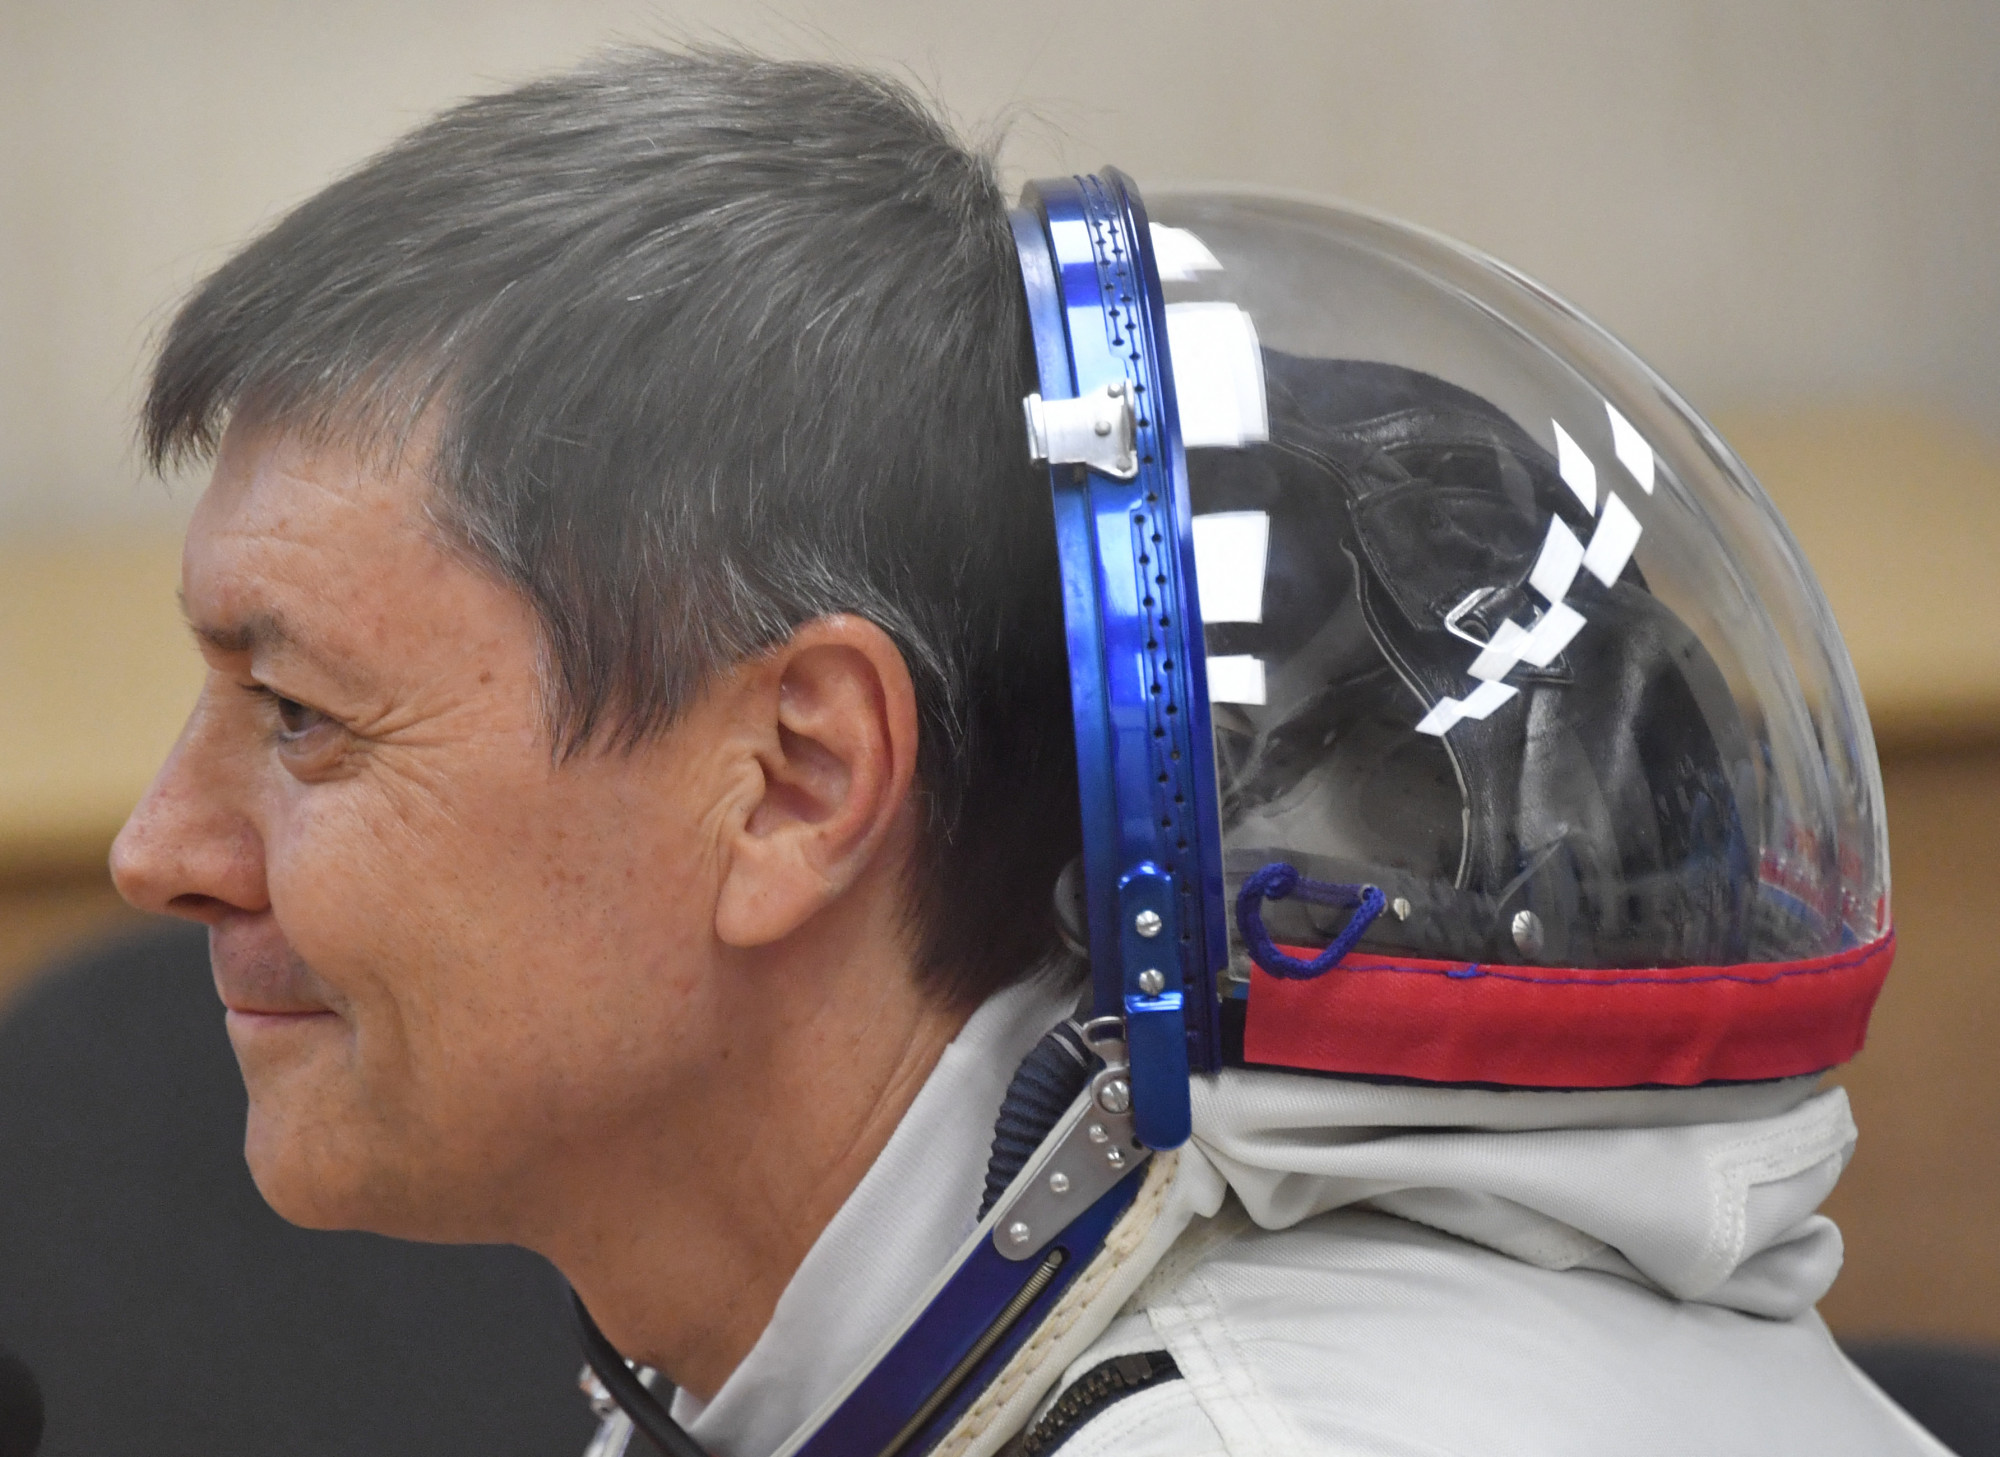 878 nap – orosz űrhajós döntötte meg a legtöbb, űrben töltött idő világrekordját